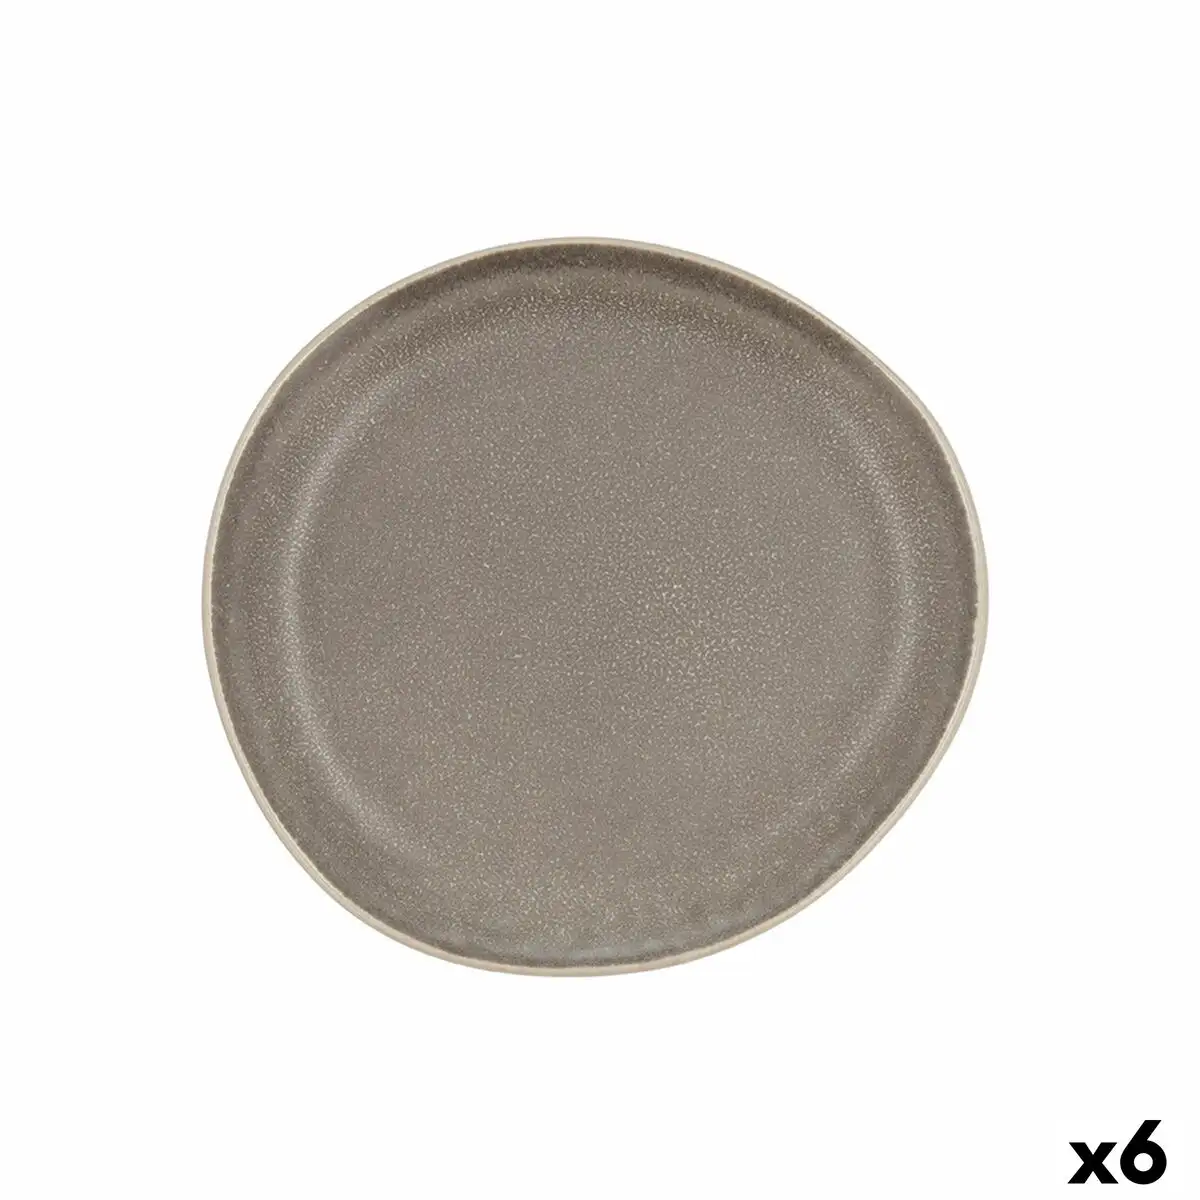 Assiette plate bidasoa gio irregulier 20 cm ceramique gris 6 unites _6652. DIAYTAR SENEGAL - Votre Source de Découvertes Shopping. Découvrez des trésors dans notre boutique en ligne, allant des articles artisanaux aux innovations modernes.